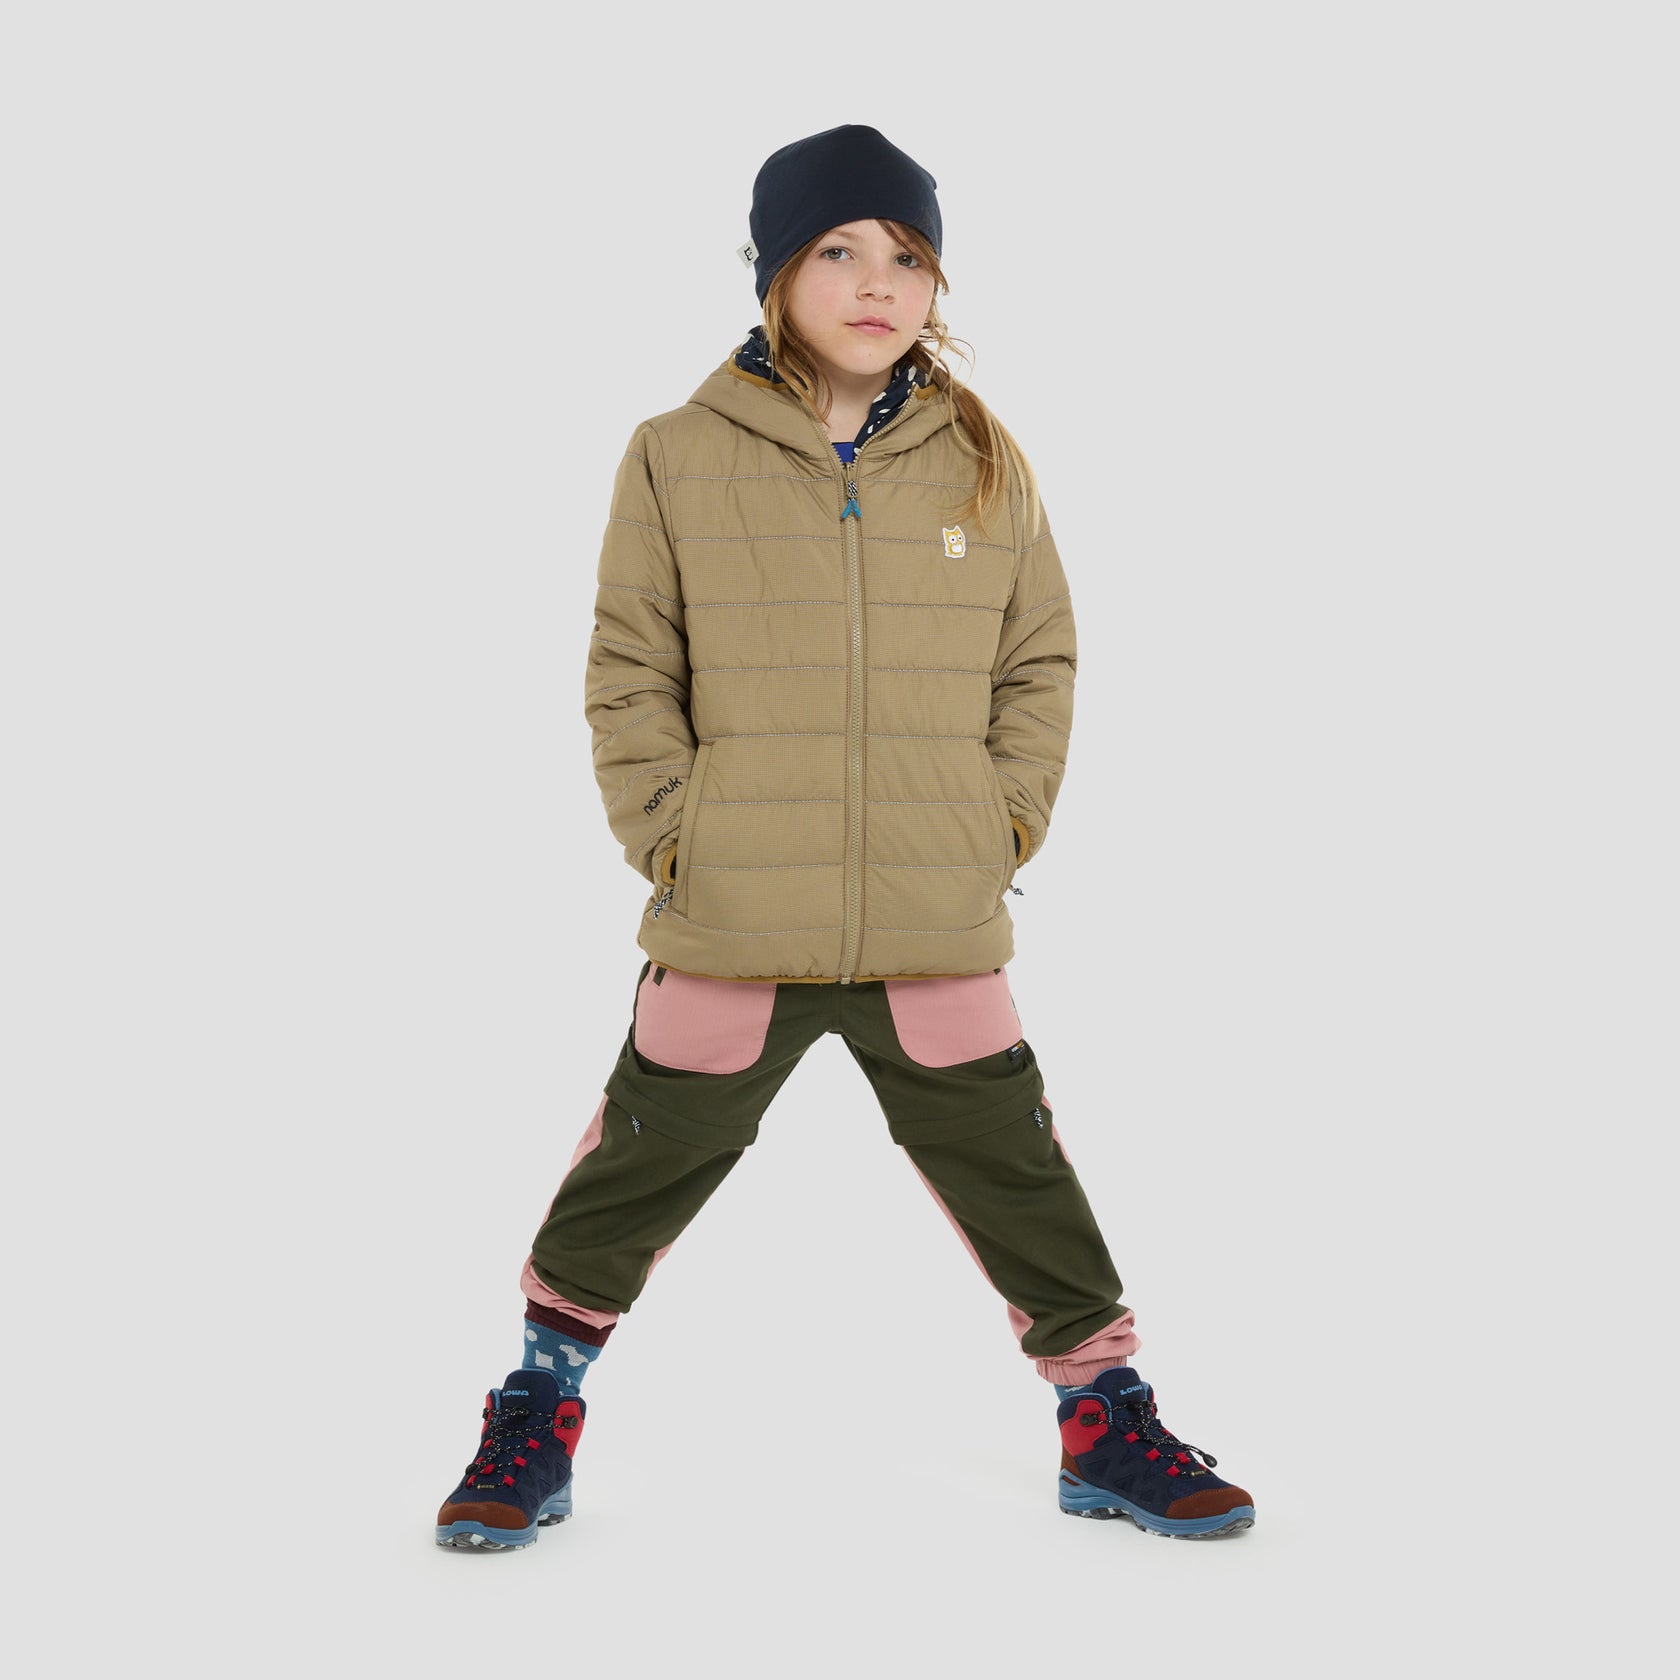 Kids outdoor jacket | PrimaLoft jacket Glow | namuk US